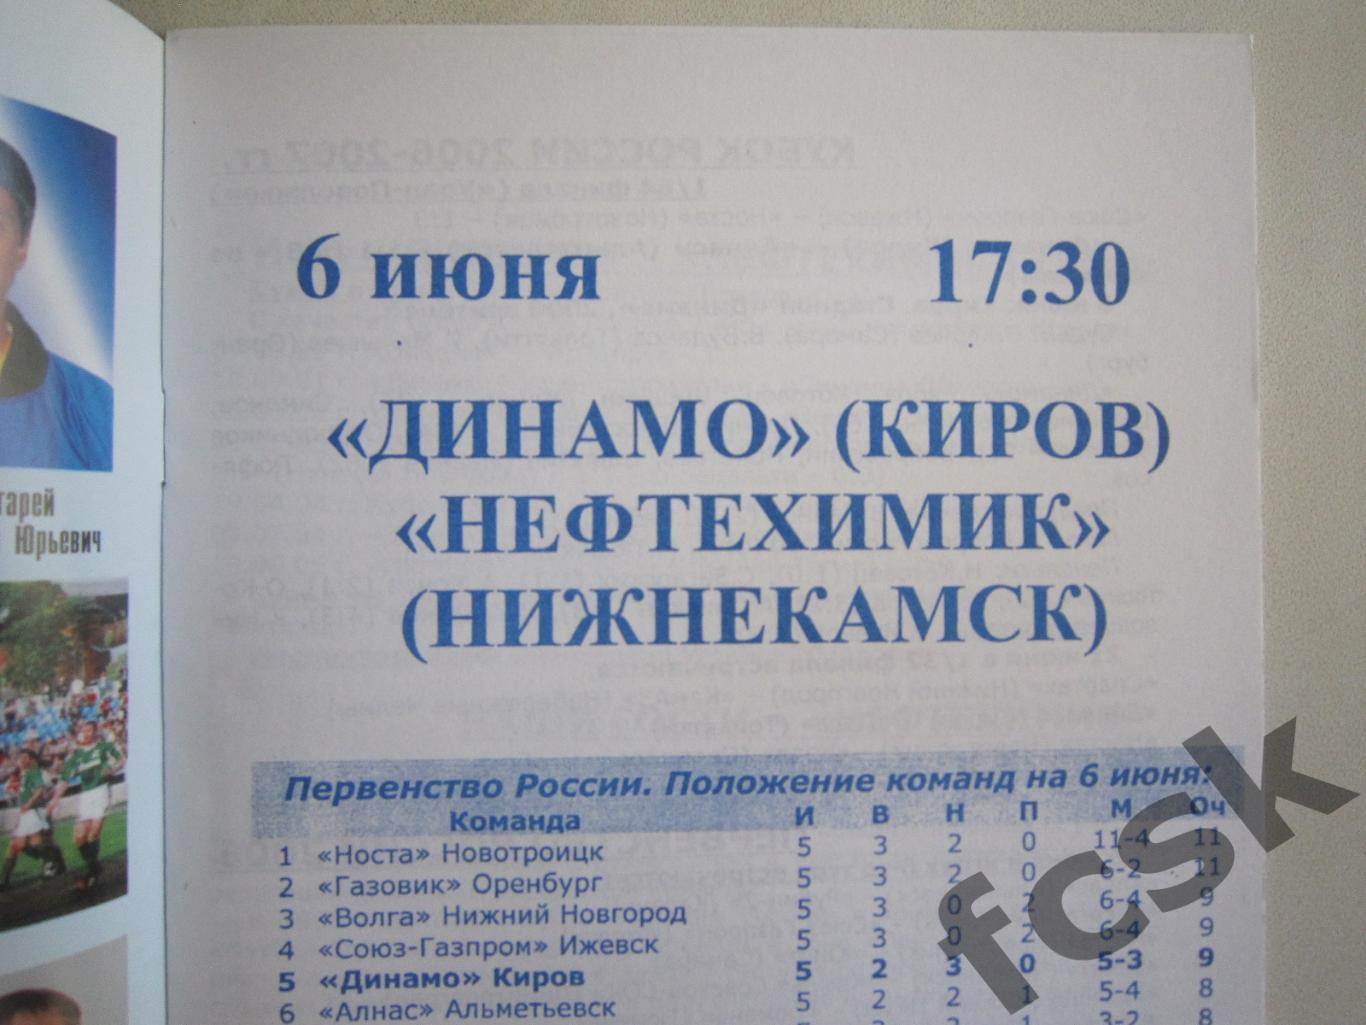 Динамо Киров - Нефтехимик Нижнекамск 2006 1